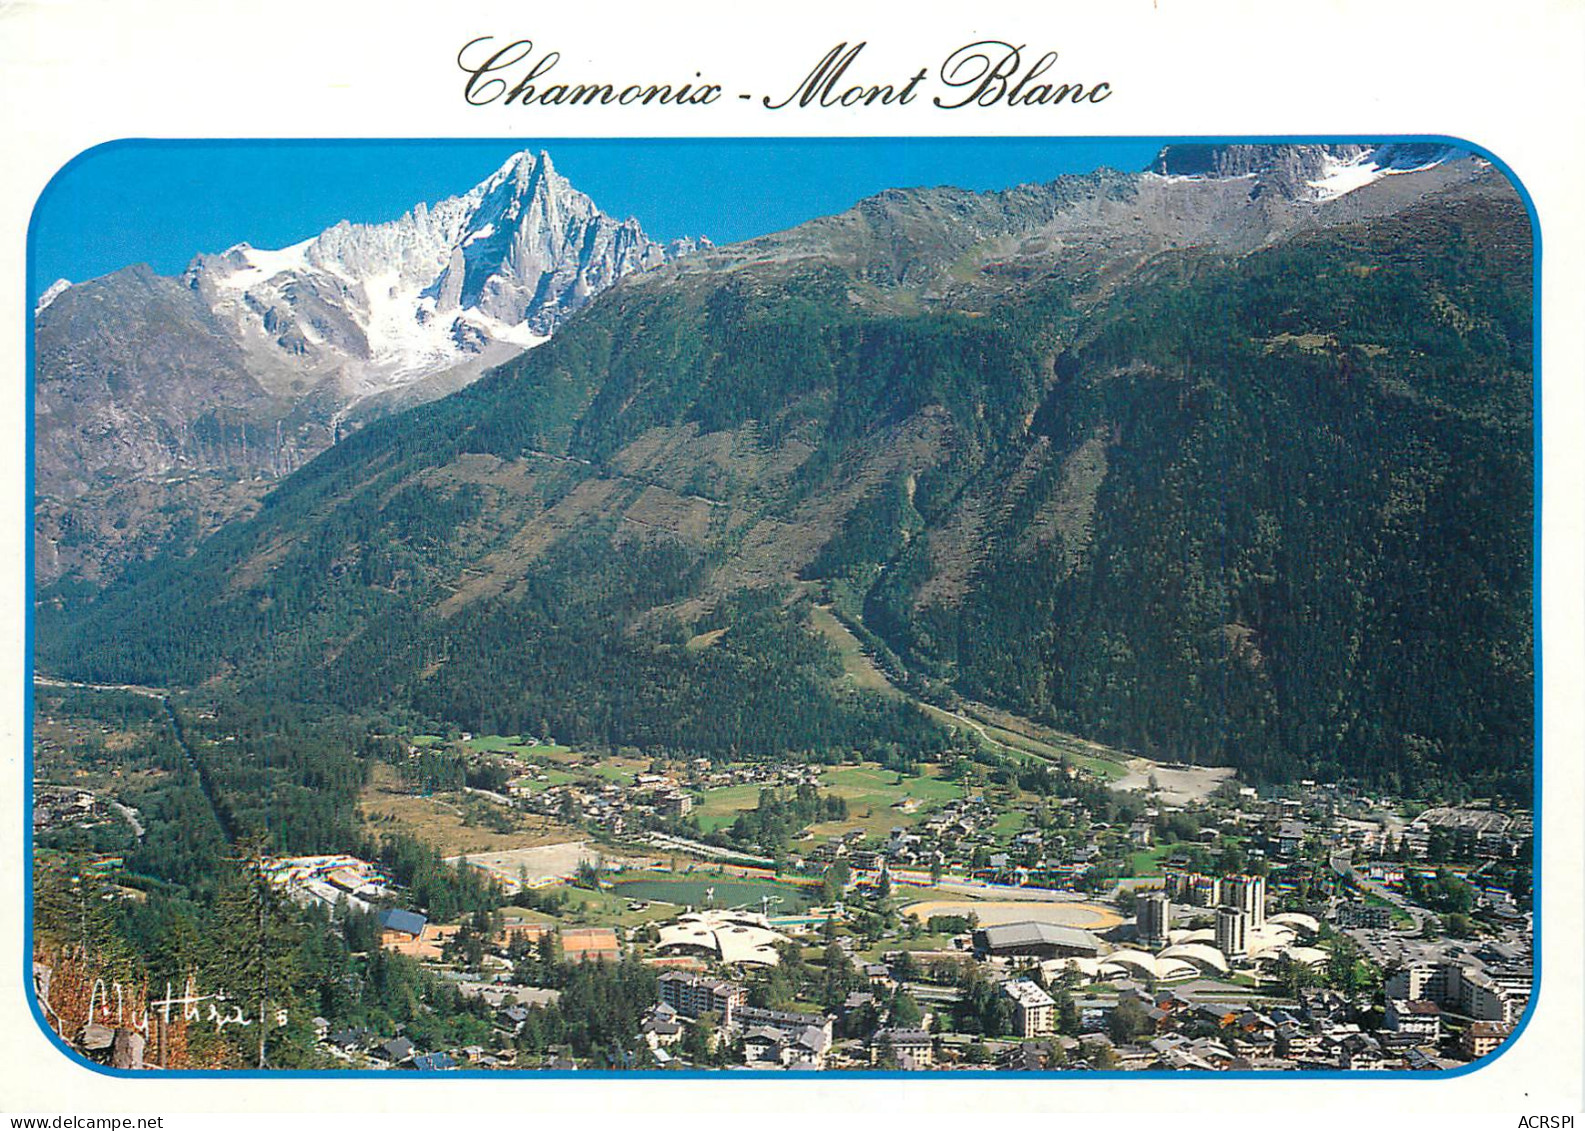 CHAMONIX Et Le Centre Sportif Avec Les Drus Et La Verte 28(scan Recto Verso)ME2694 - Chamonix-Mont-Blanc